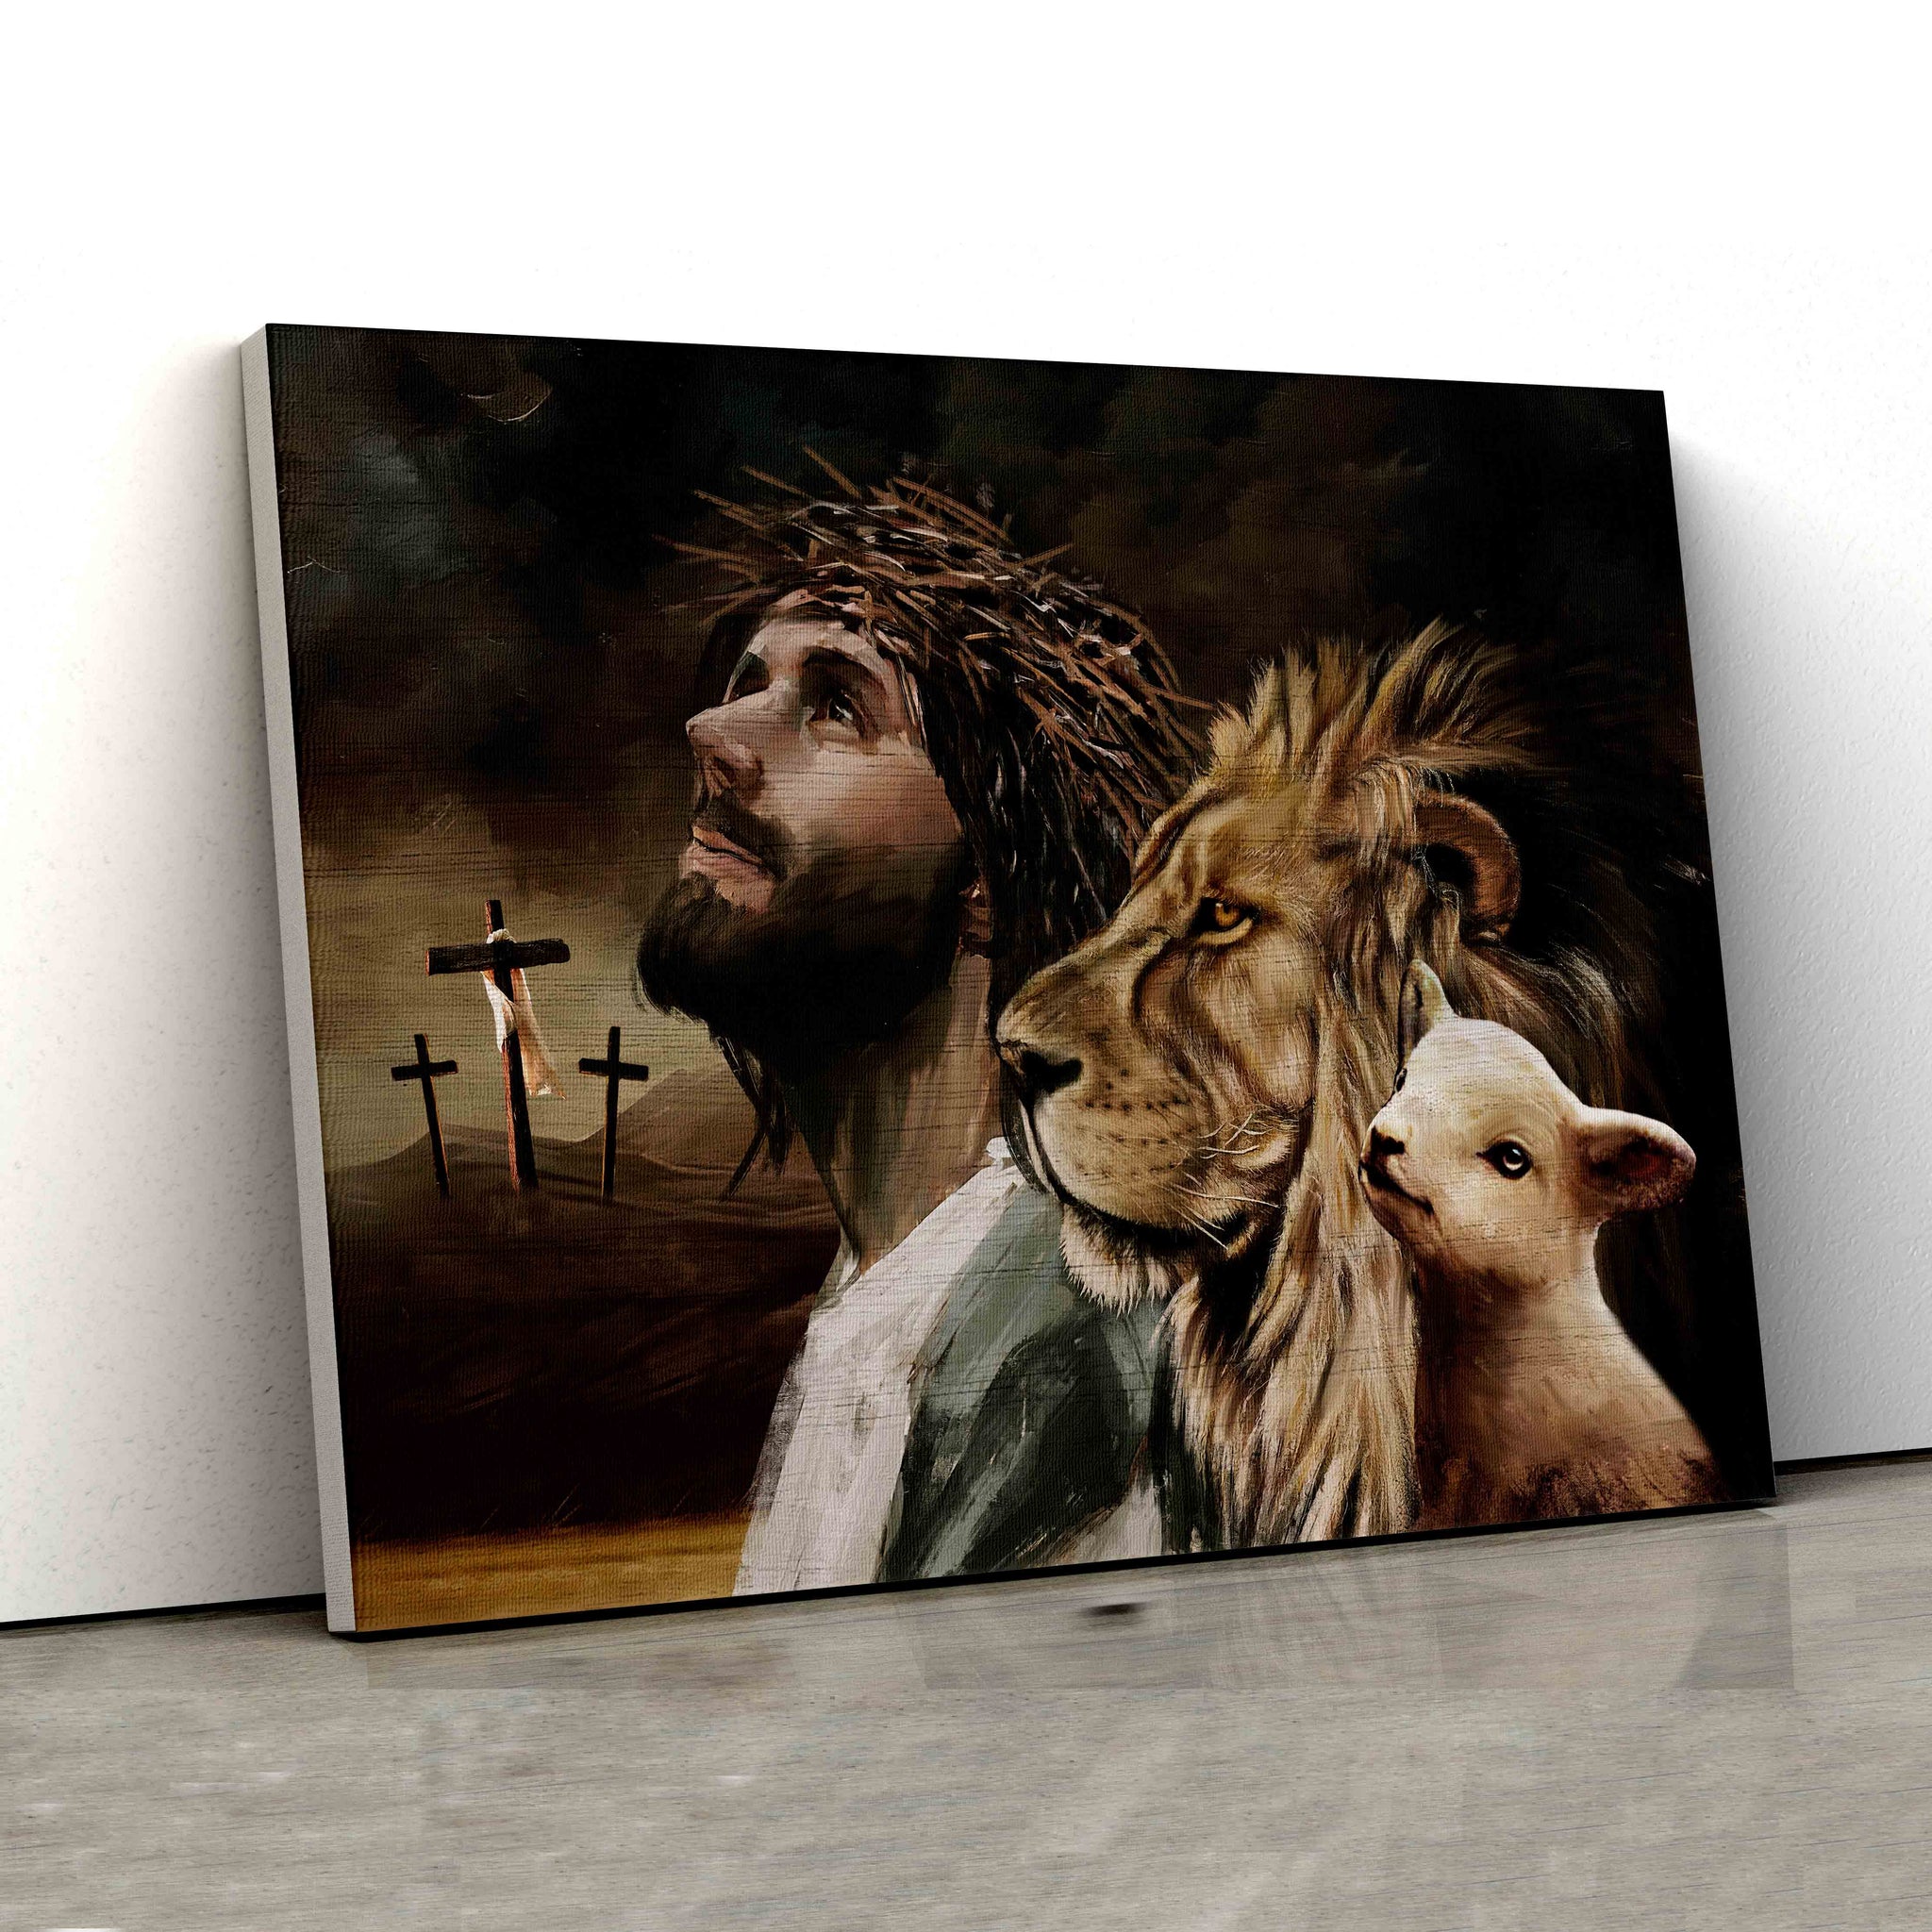 Jesus Canvas, Lion Of Judah Canvas, Lamb Canvas, Cross Canvas, God Canvas, Family Canvas, Canvas Wall Art, Gift Canvas